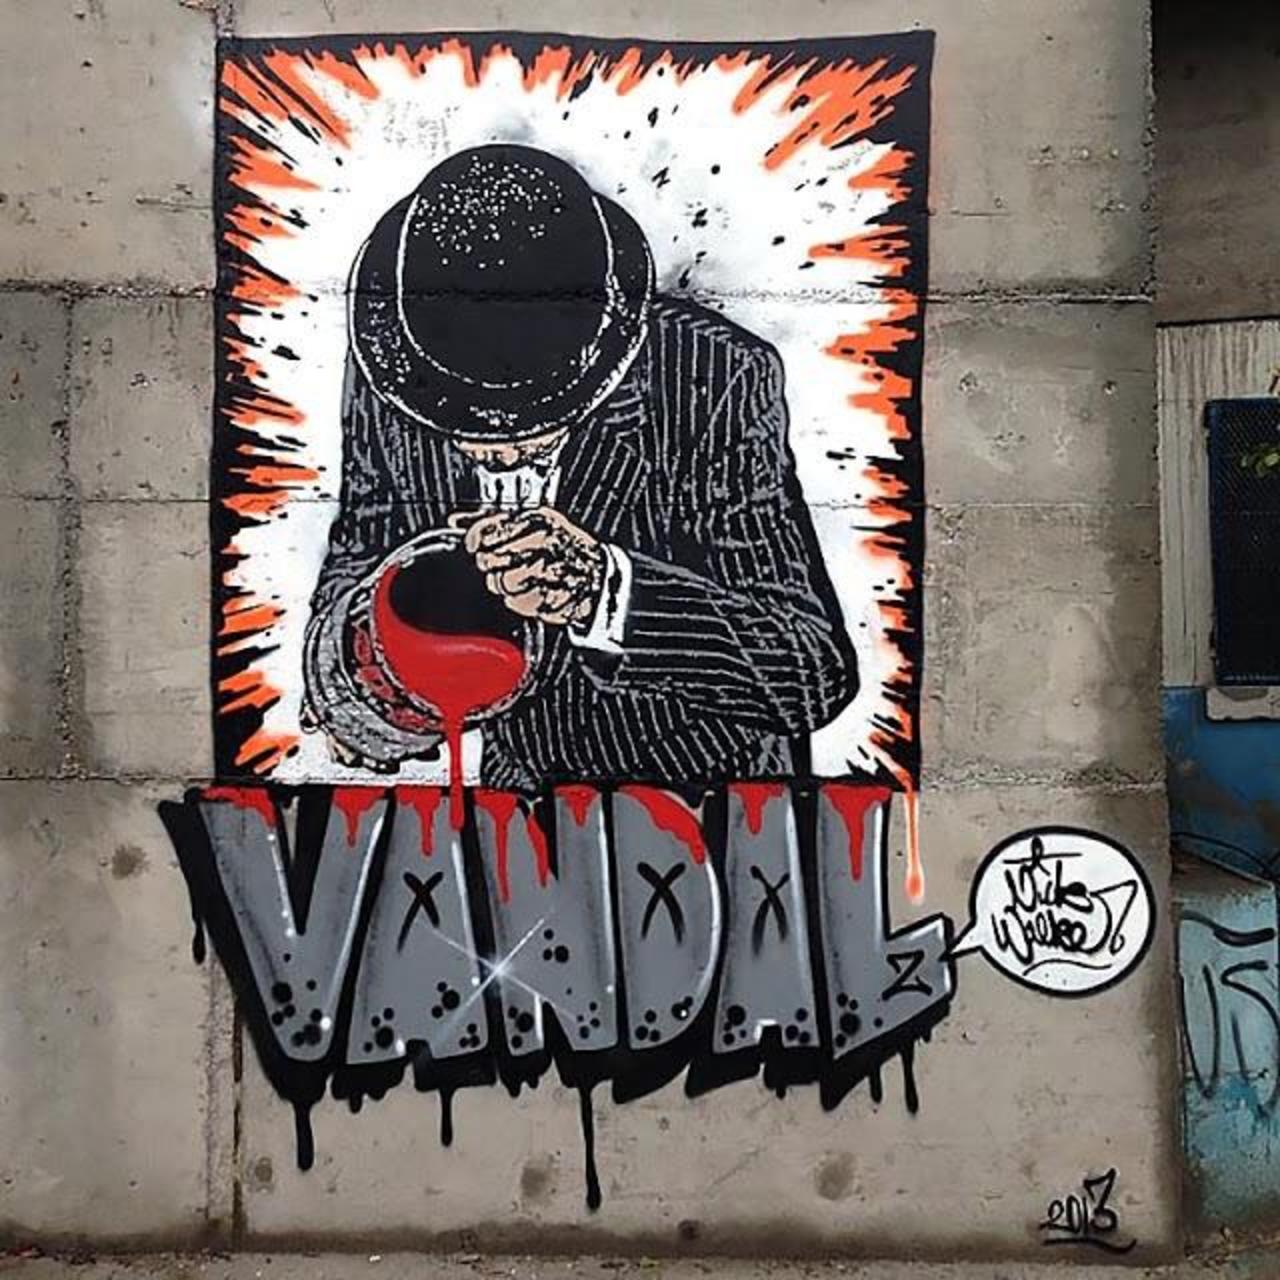 Nick Walker / he is currently in South America working on the walls of Sao Paolo, Brazil. 
#streetart #graffiti #art http://t.co/KoQjjk7r7k